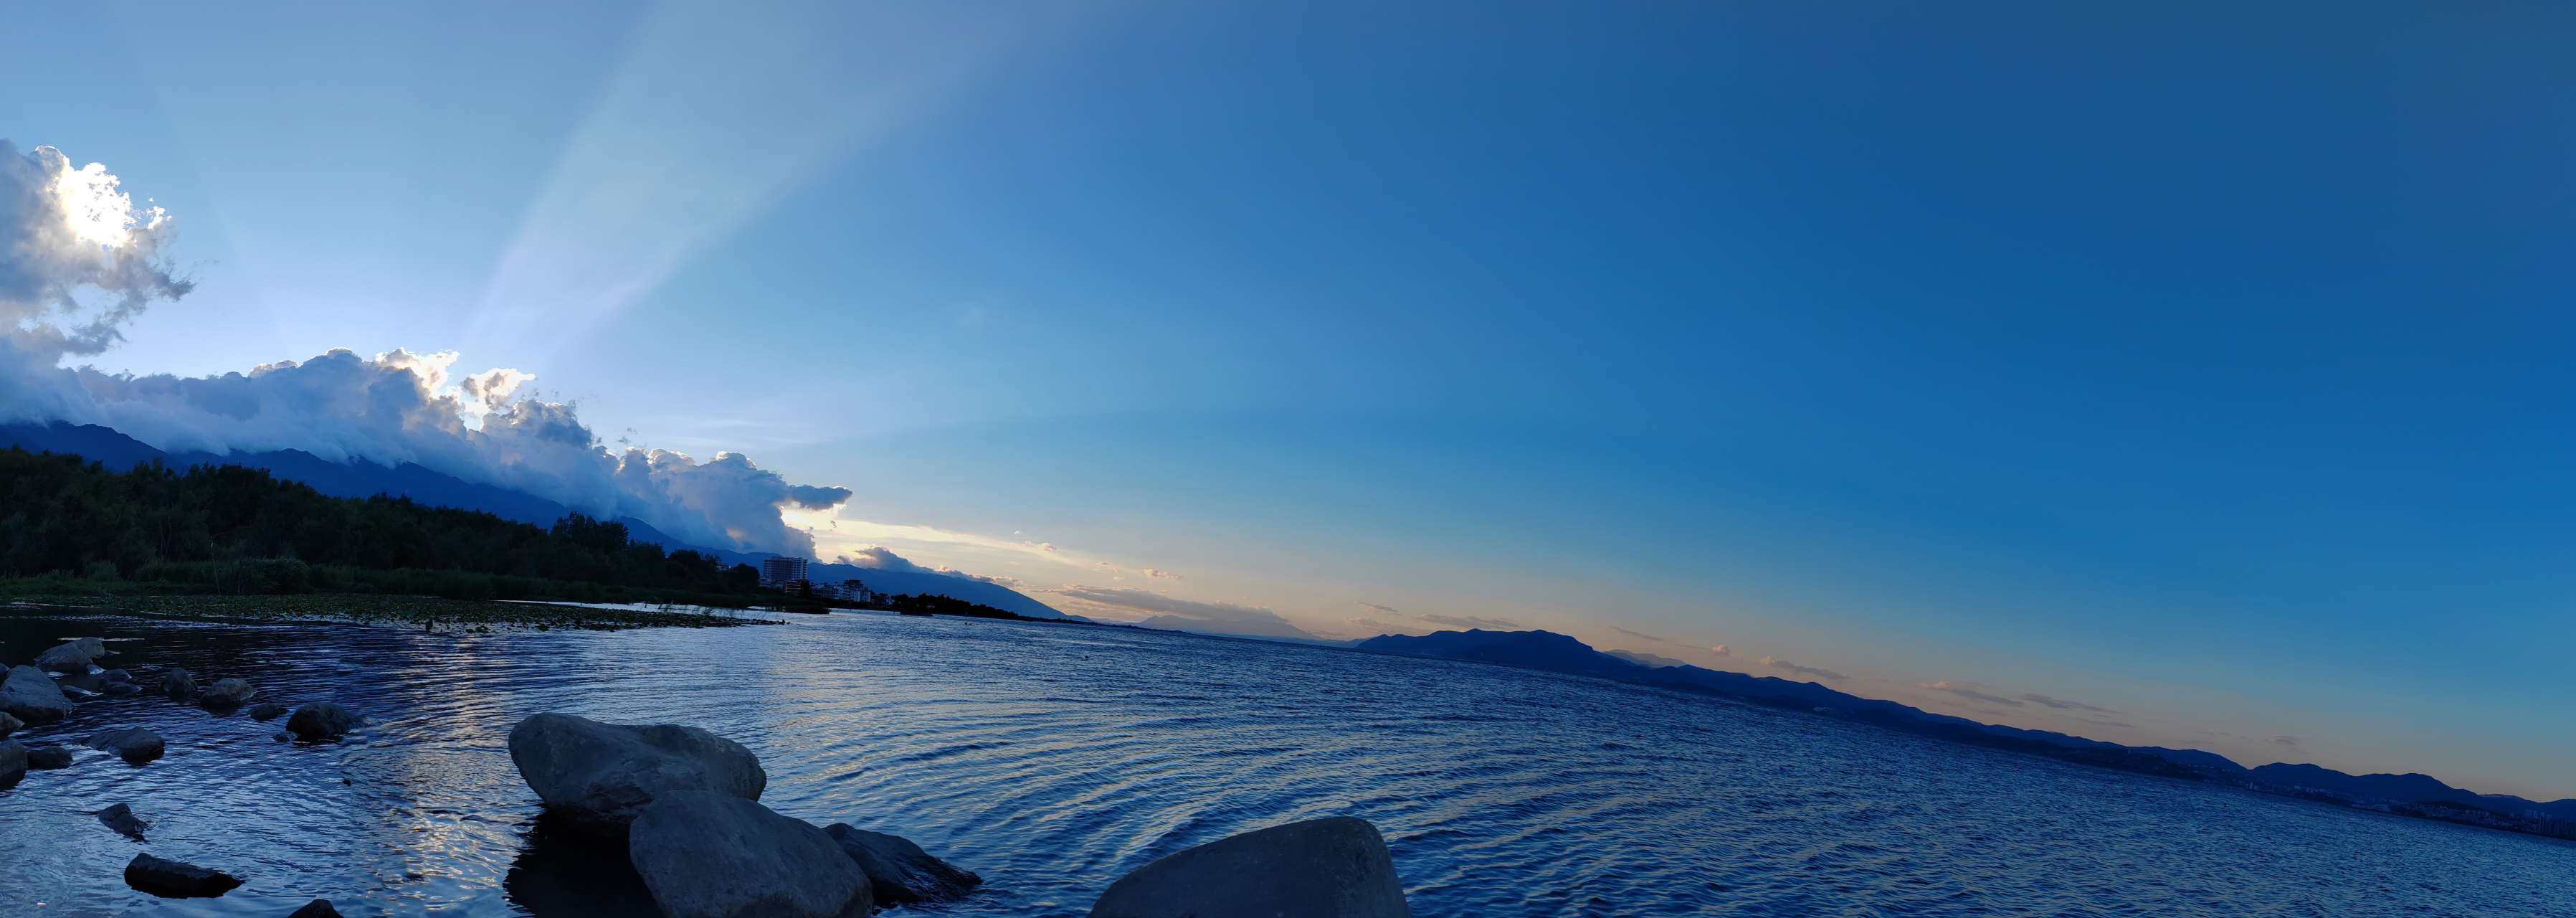 洱海全景图图片